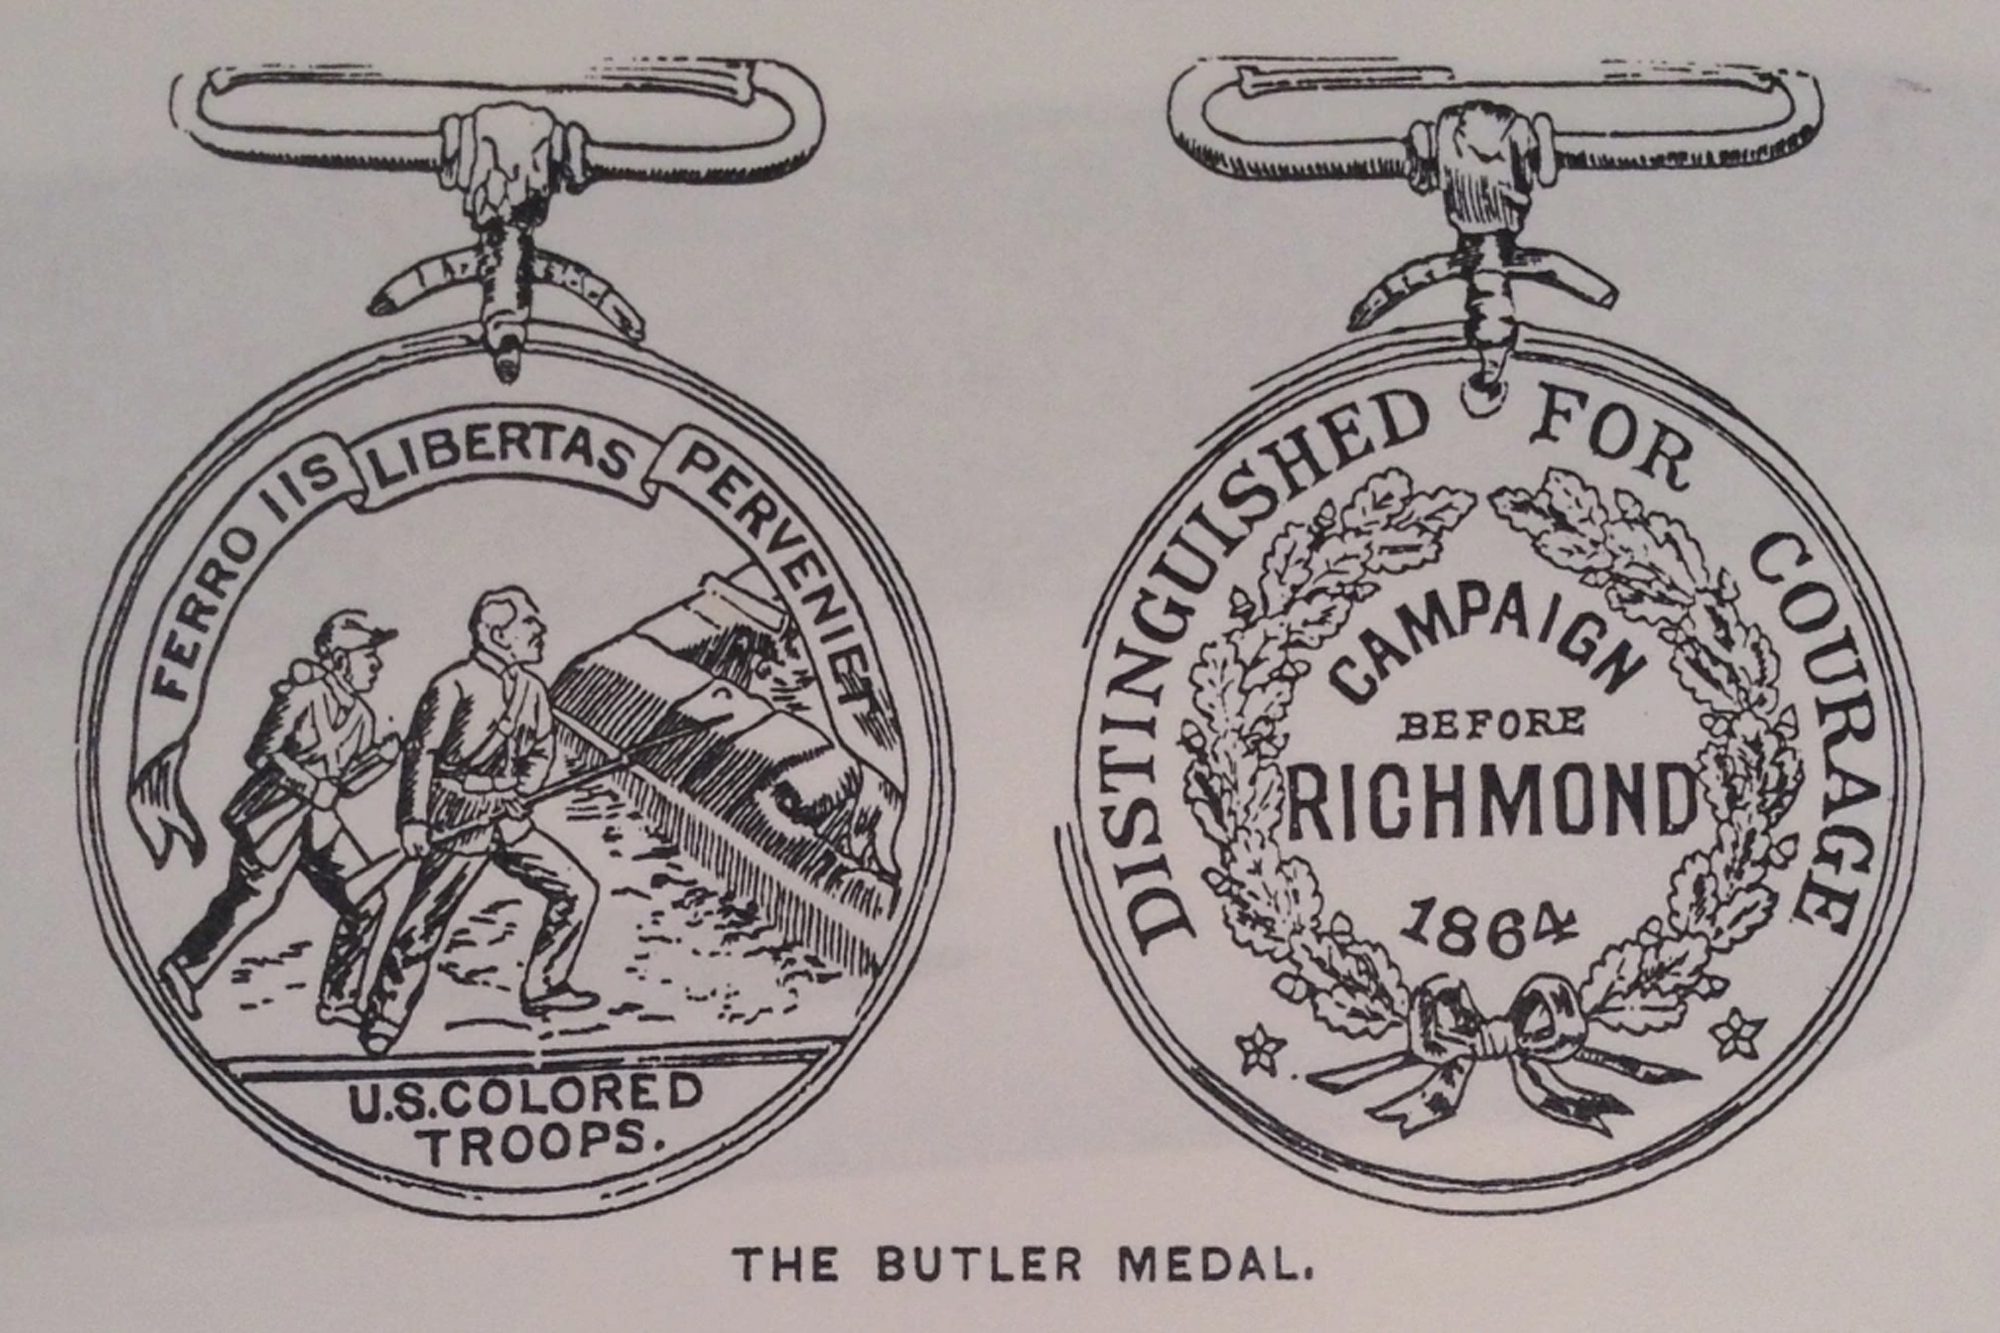 The Butler Medal